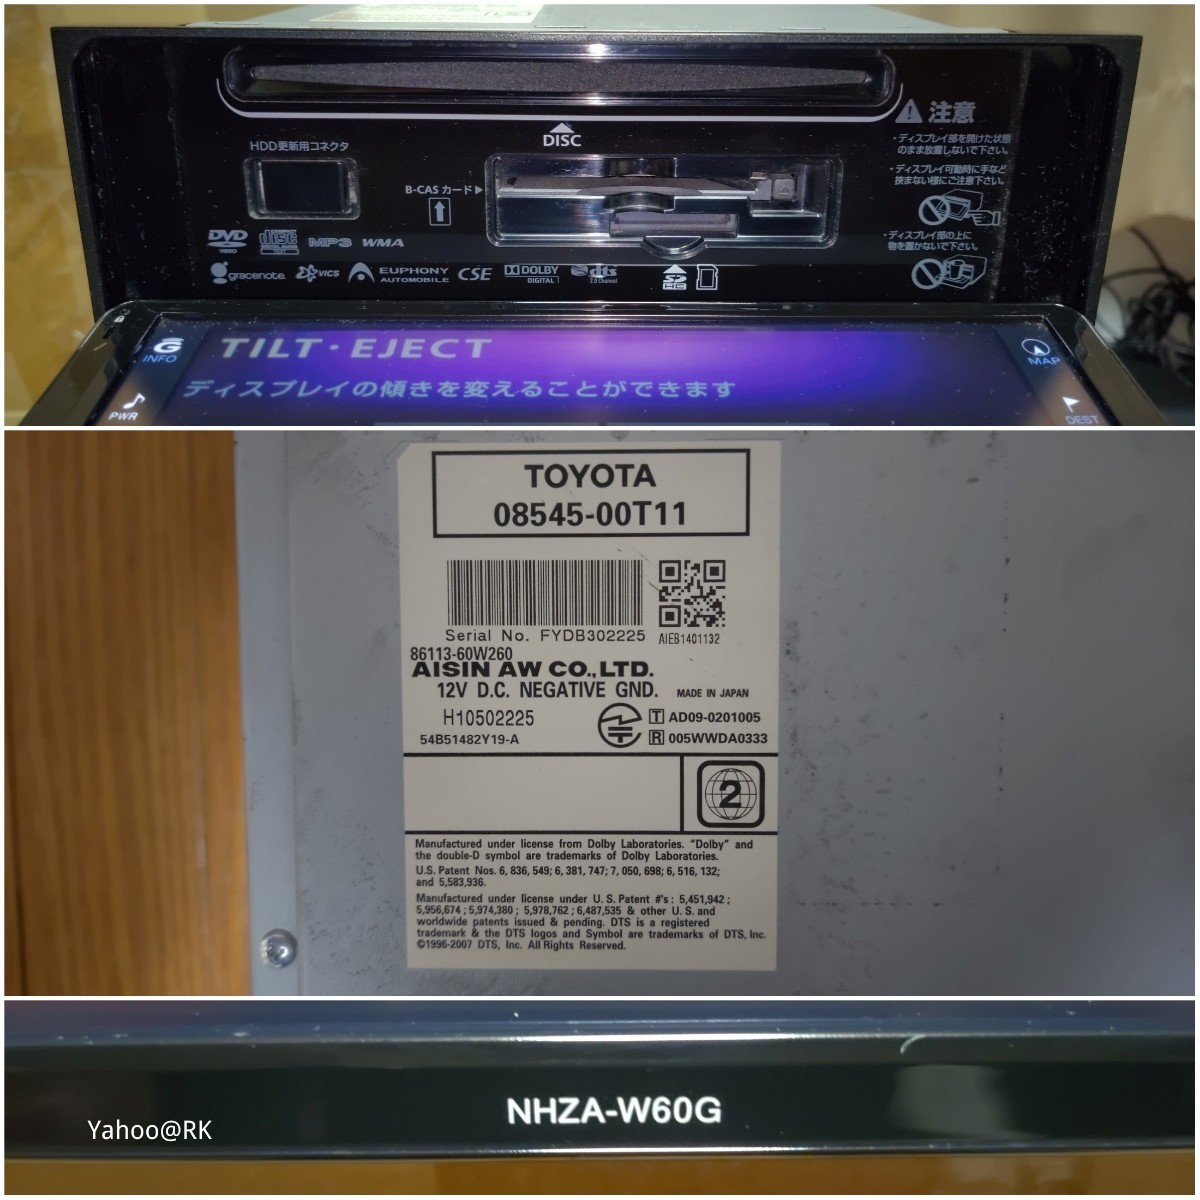 トヨタ純正 HDDナビ 型式 NHZA-W60G DVD再生 テレビ フルセグ SDカード USB CD録音 Bluetooth AISIN 品番 08545-00T11_画像8